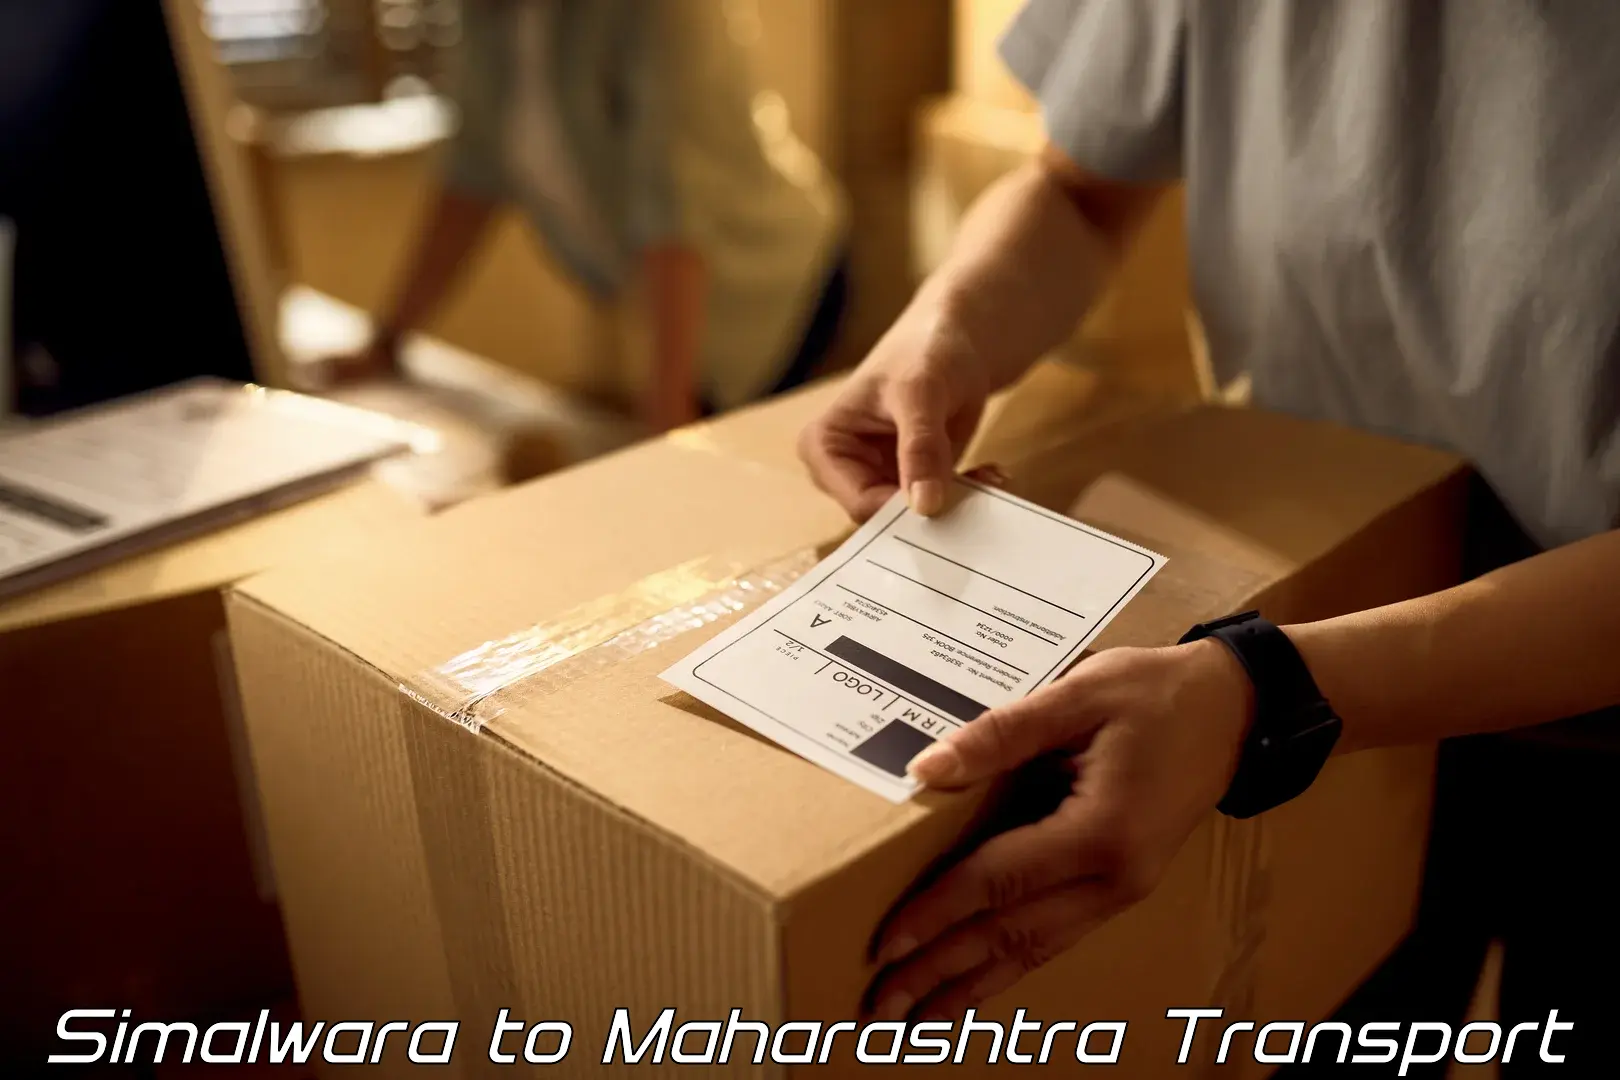 Two wheeler parcel service Simalwara to Mumbai